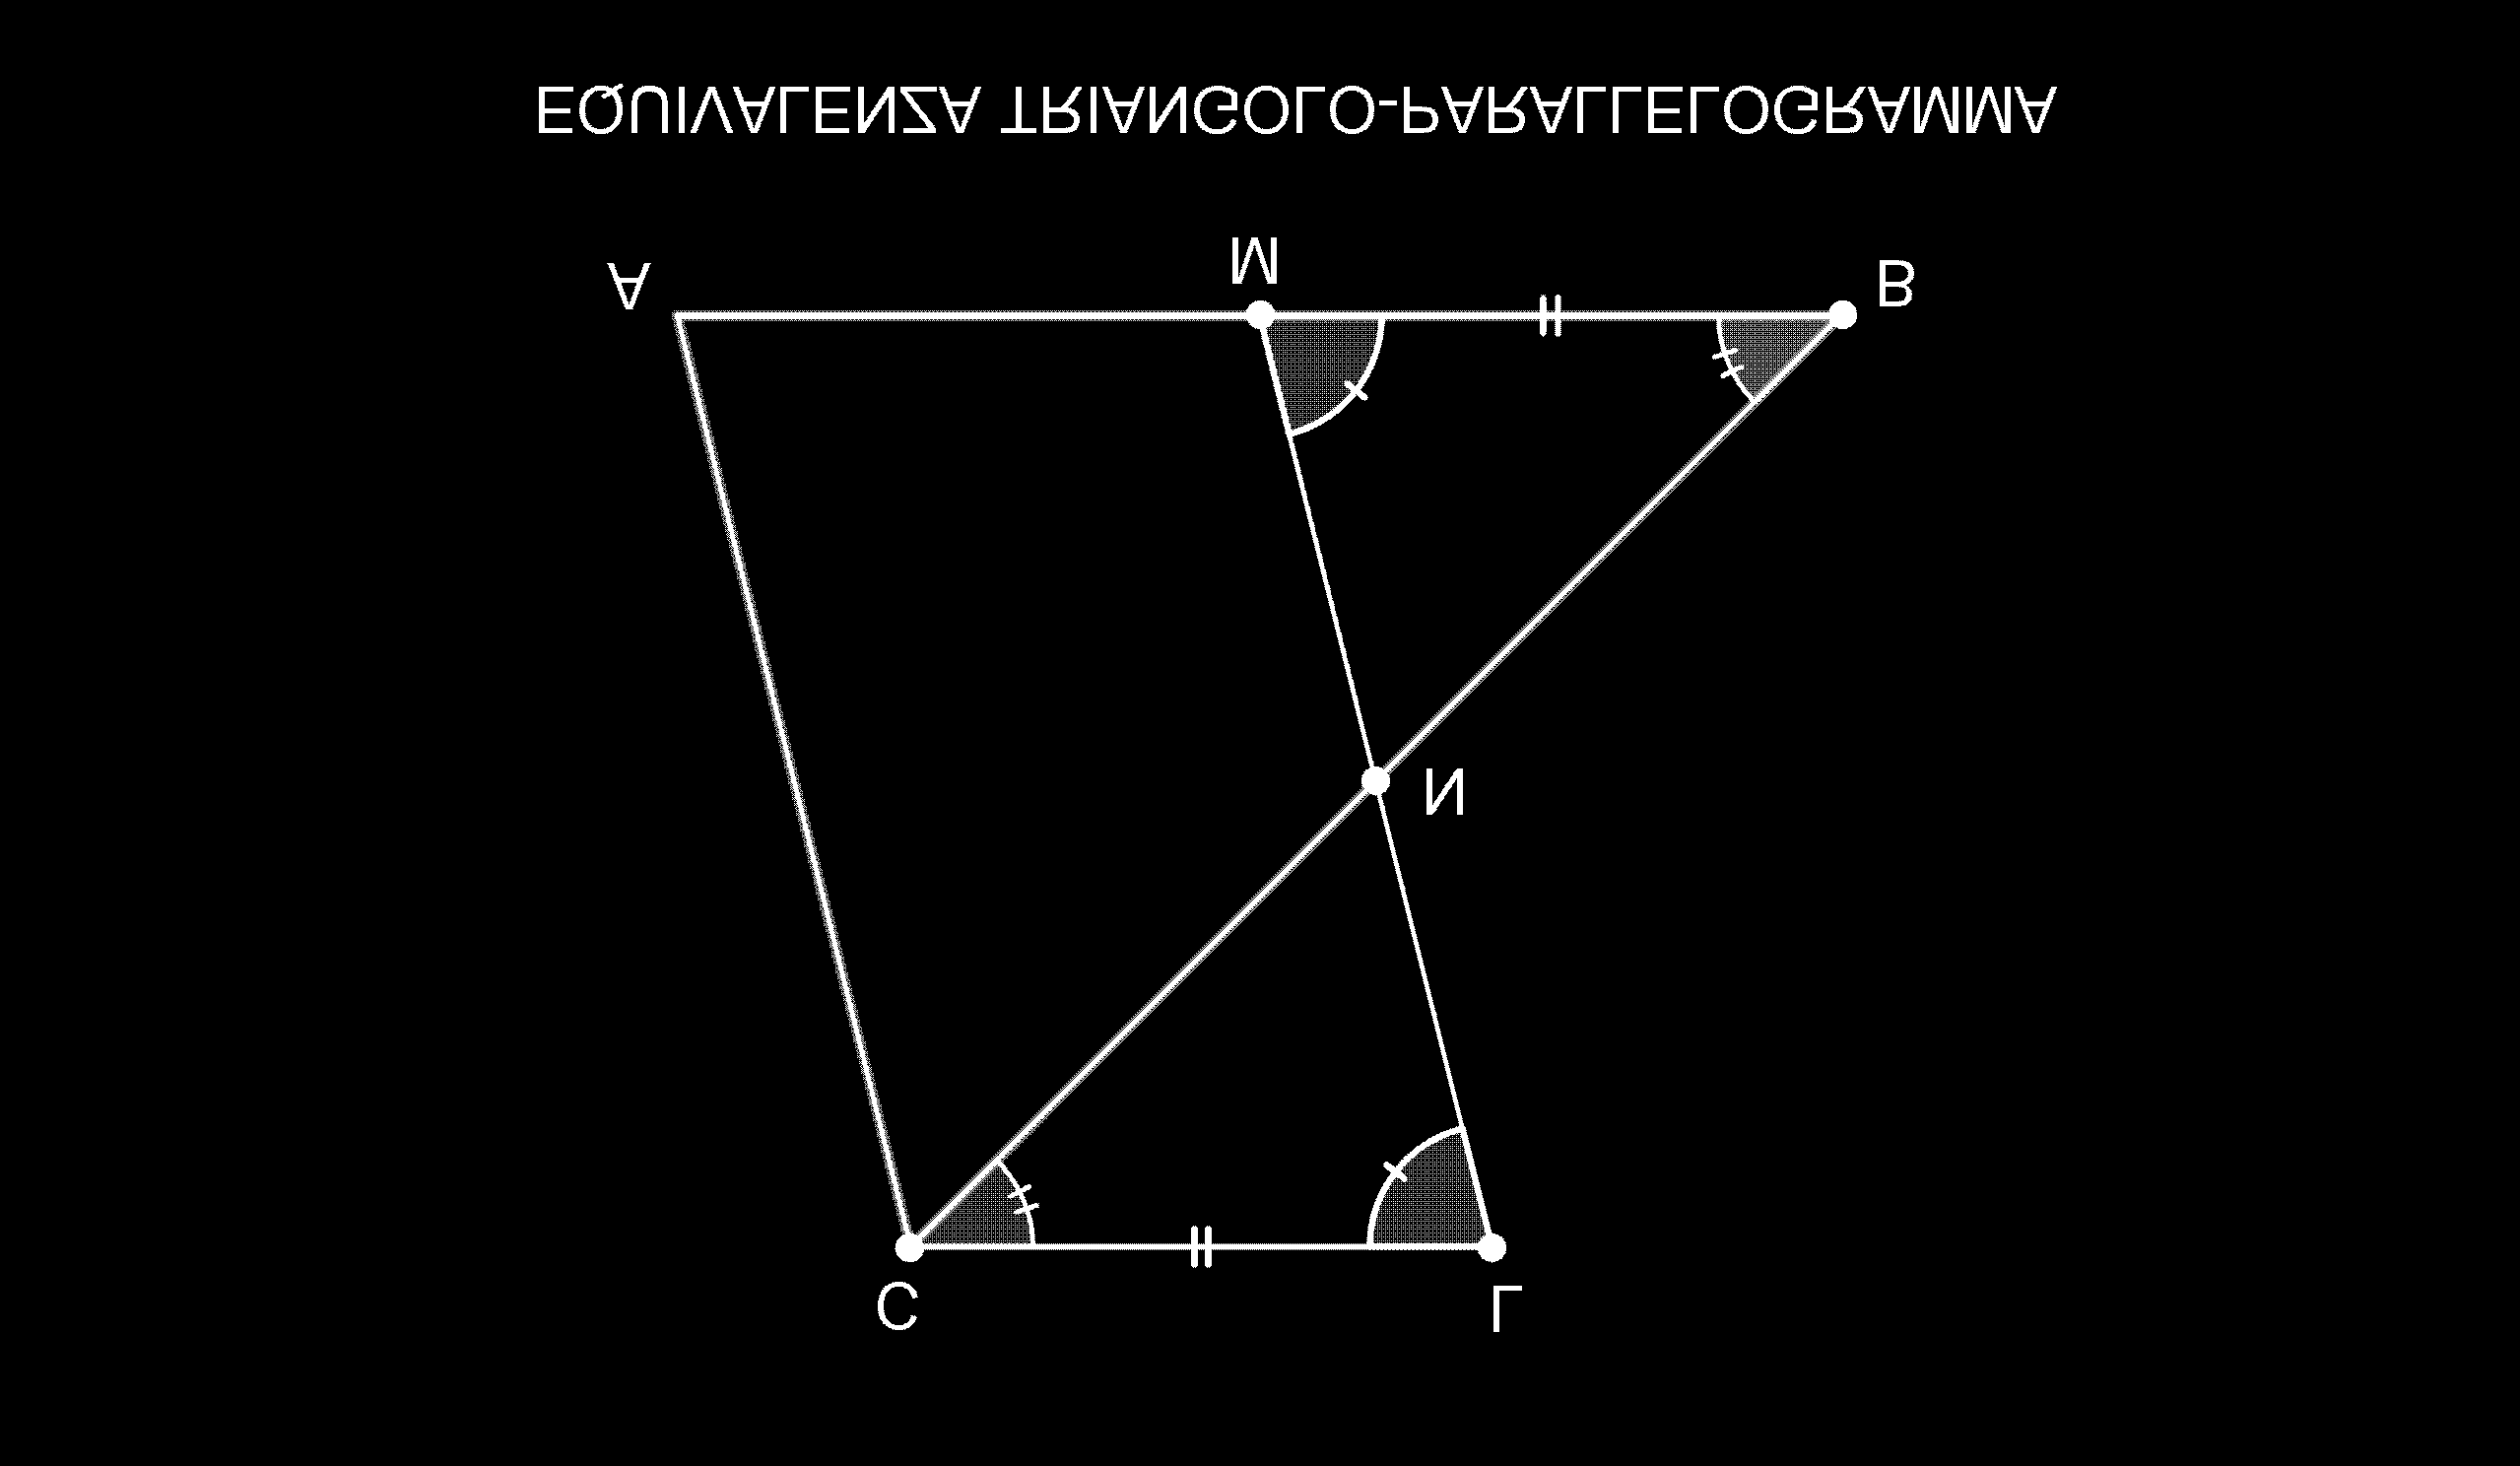 1.2 EQUIVALENZA TRIANGOLO-PARALLELOGRAMMA TEOREMA: Ogni triangolo è equivalente ad un parallogramma che ha altezza congruente a quella del triangolo e base congruente alla metà di quella del